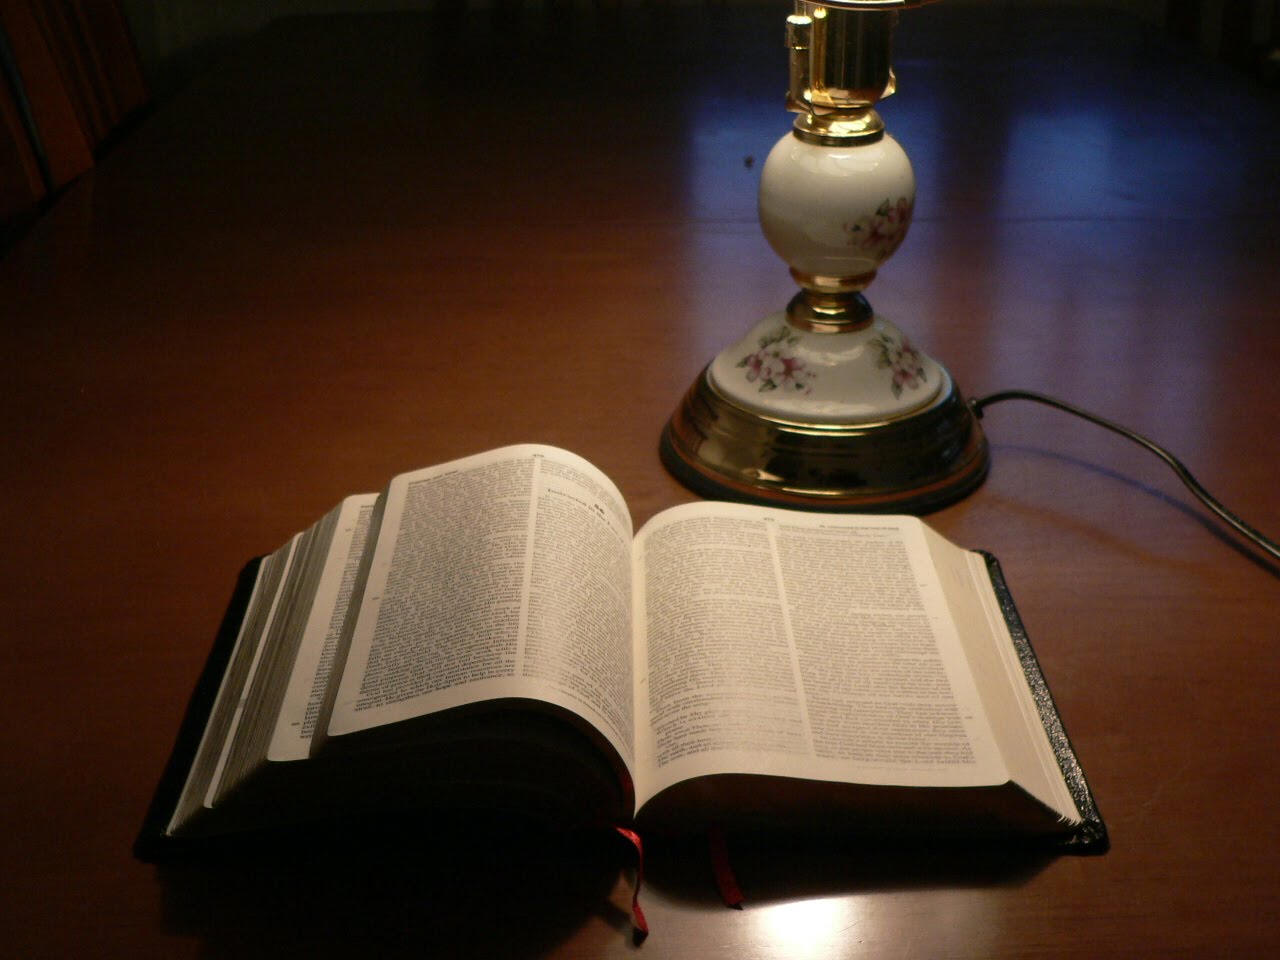 Biblia con lámpara, las que ilustran Doctrina, religión y la verdad